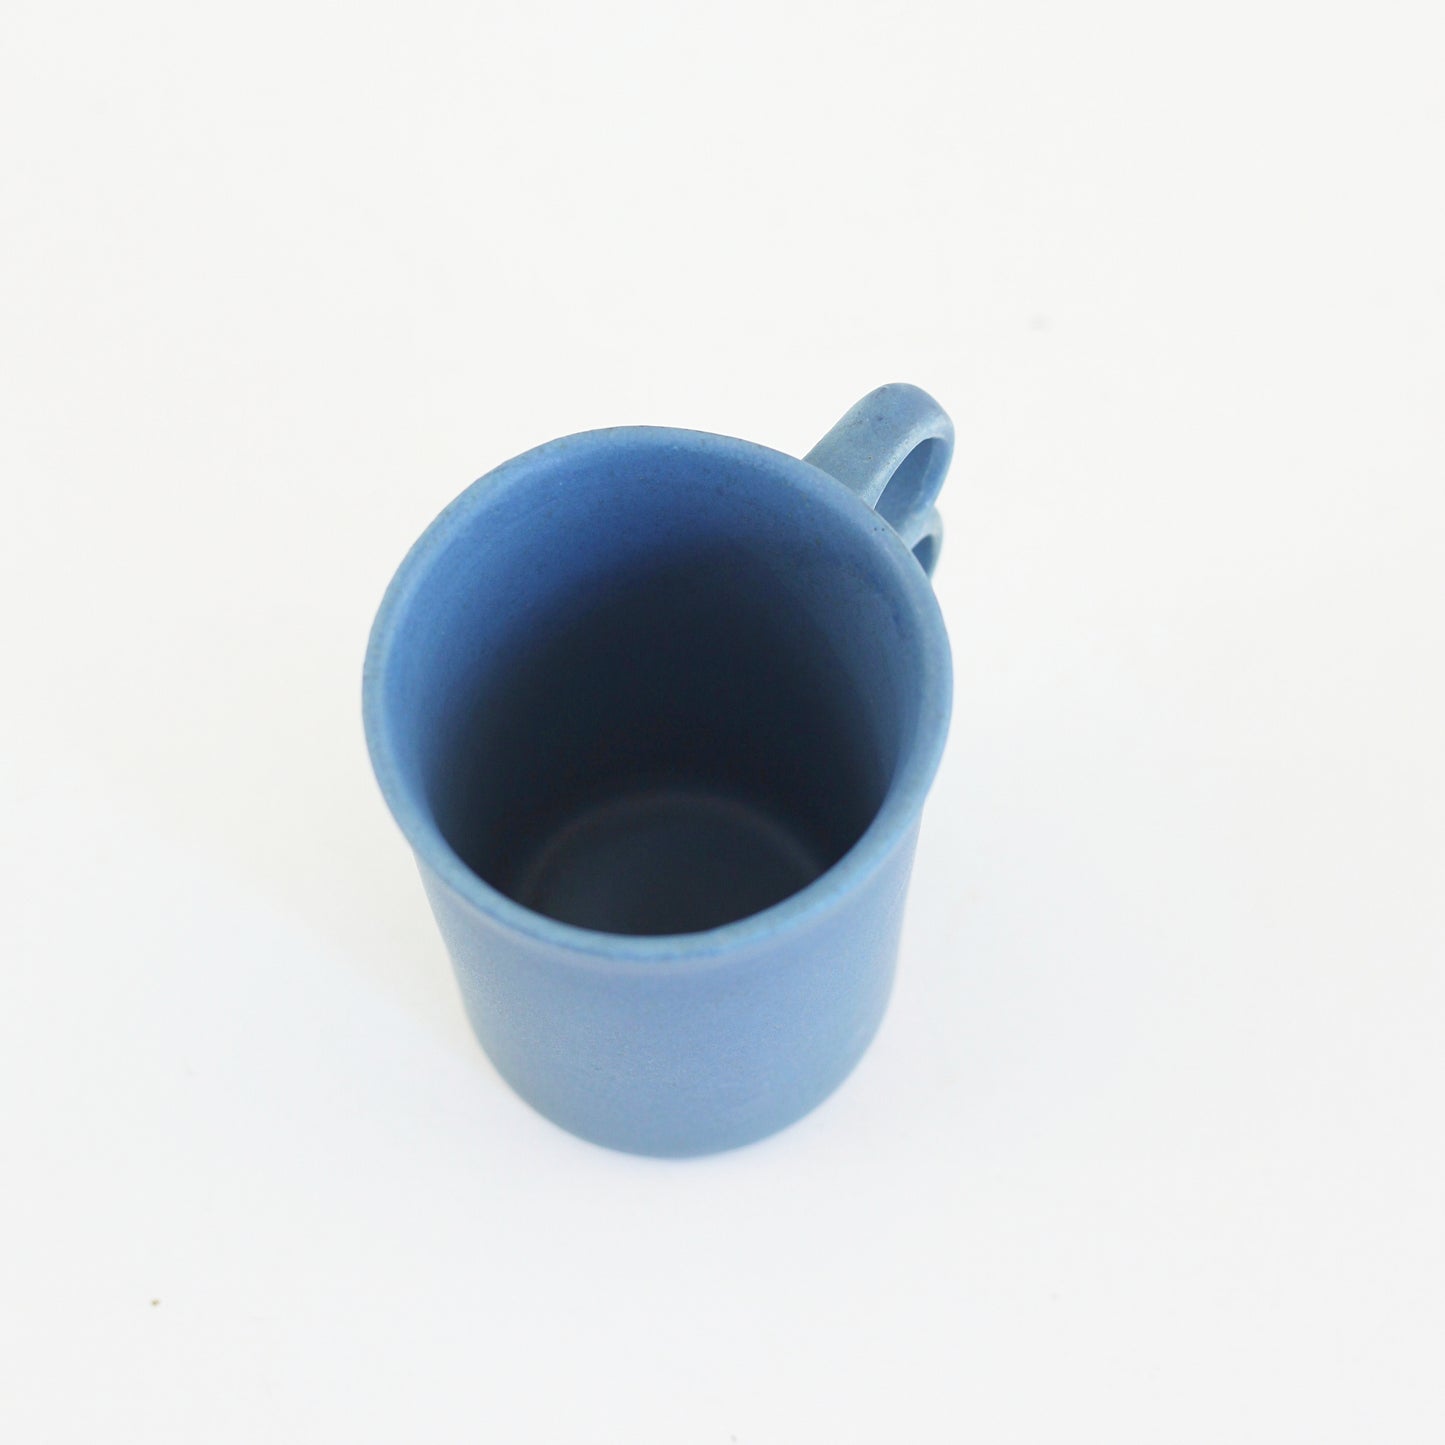 SOLD - Bennington Potters Blue Trigger Handle Mug